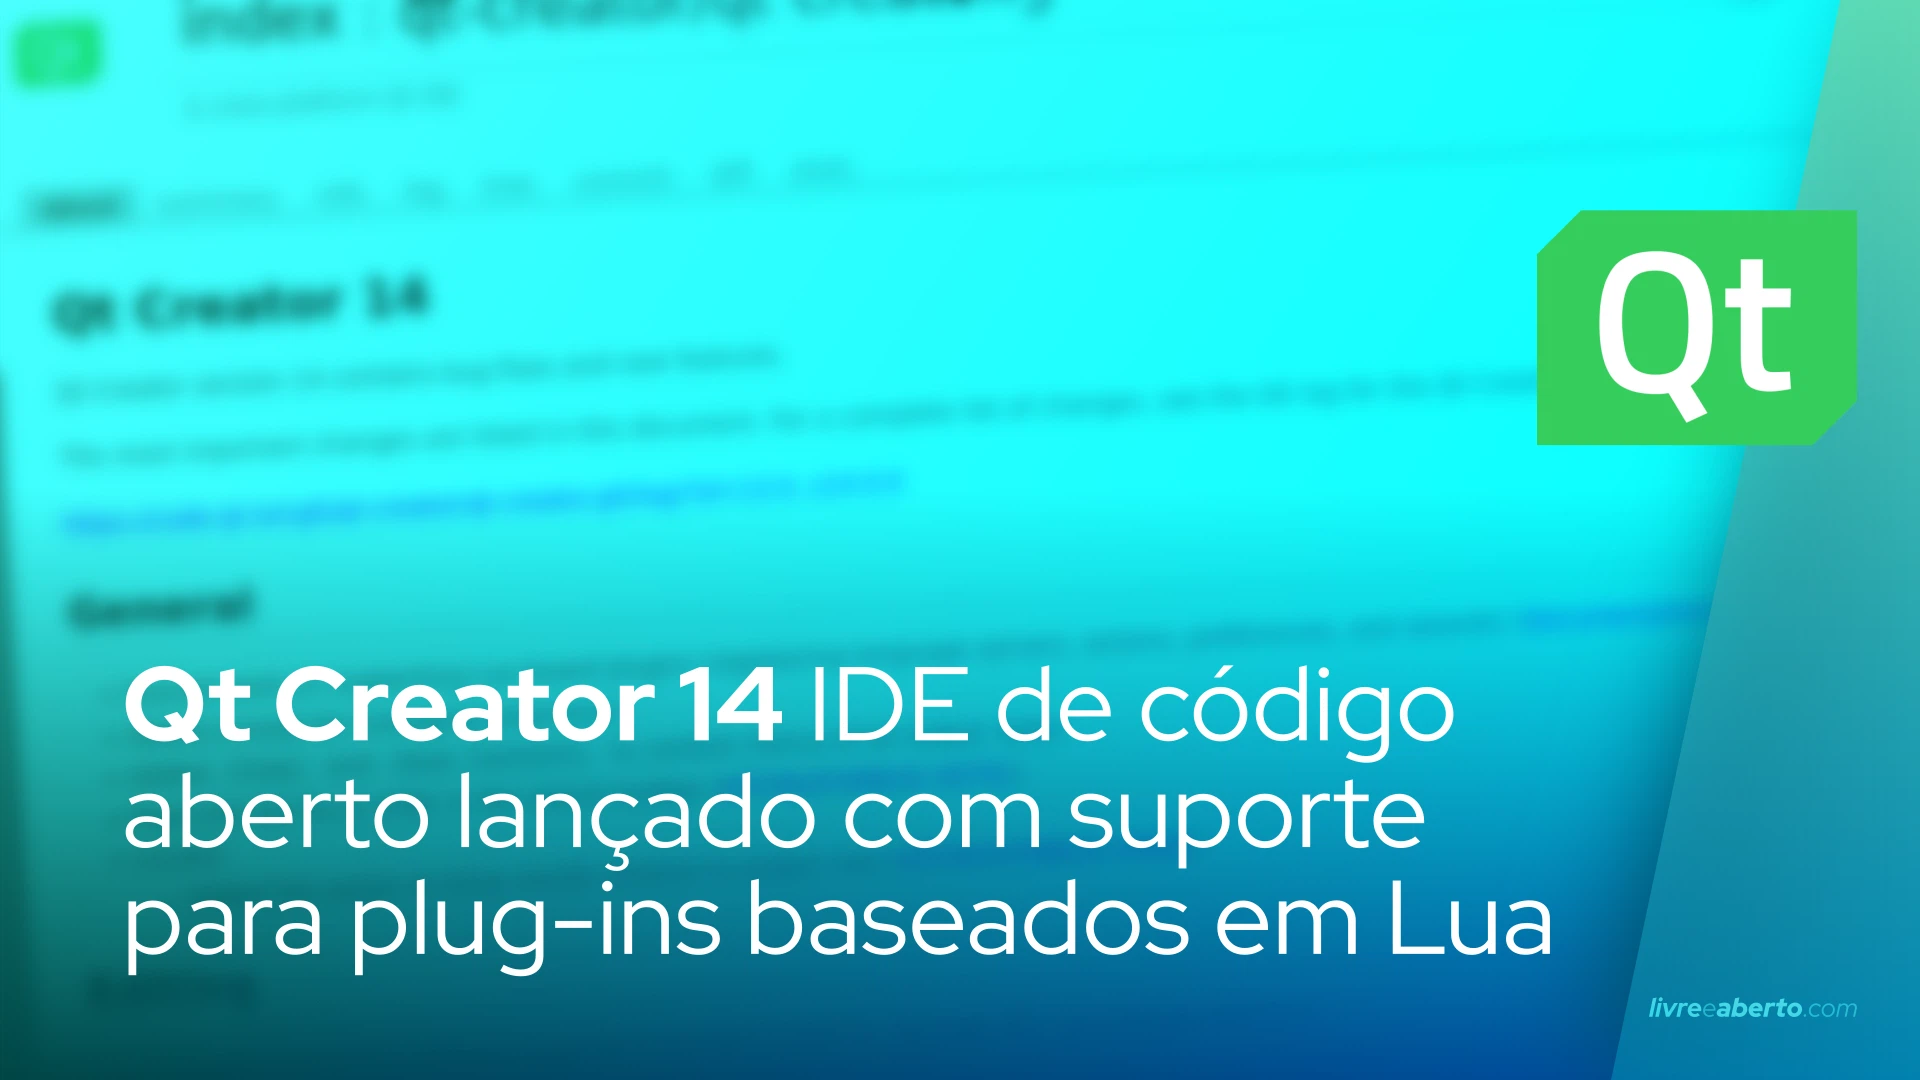 Qt Creator 14 IDE de código aberto lançado com suporte para plug-ins baseados em Lua